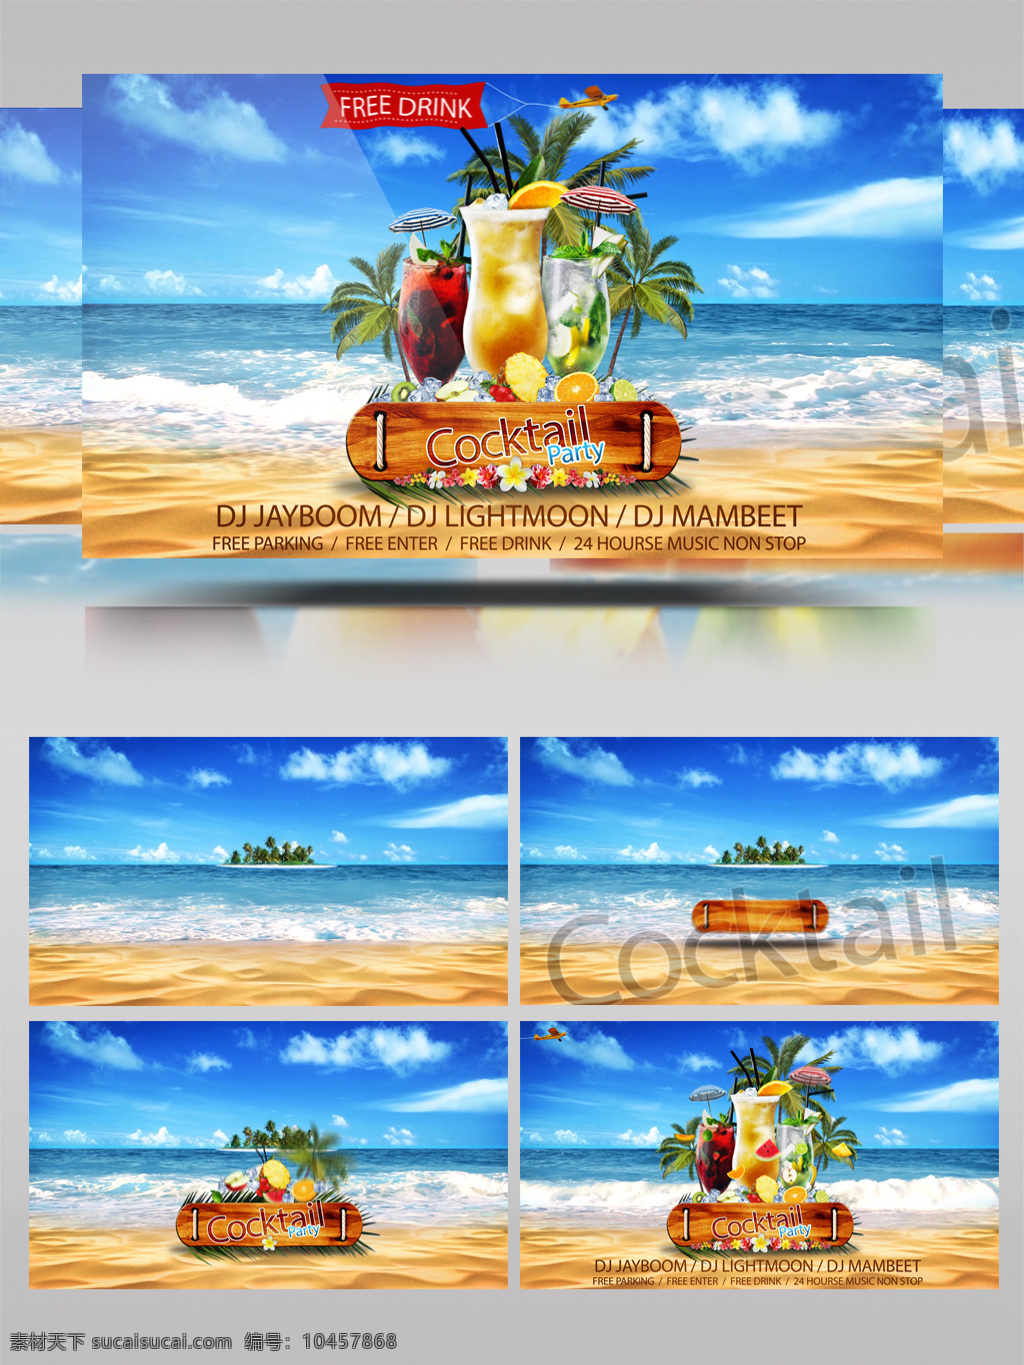 火热 夏日 免费 畅饮 宣传海报 动画 ae 模板 暑假 派对 海滩 促销 大海 推广 3d动画 片头